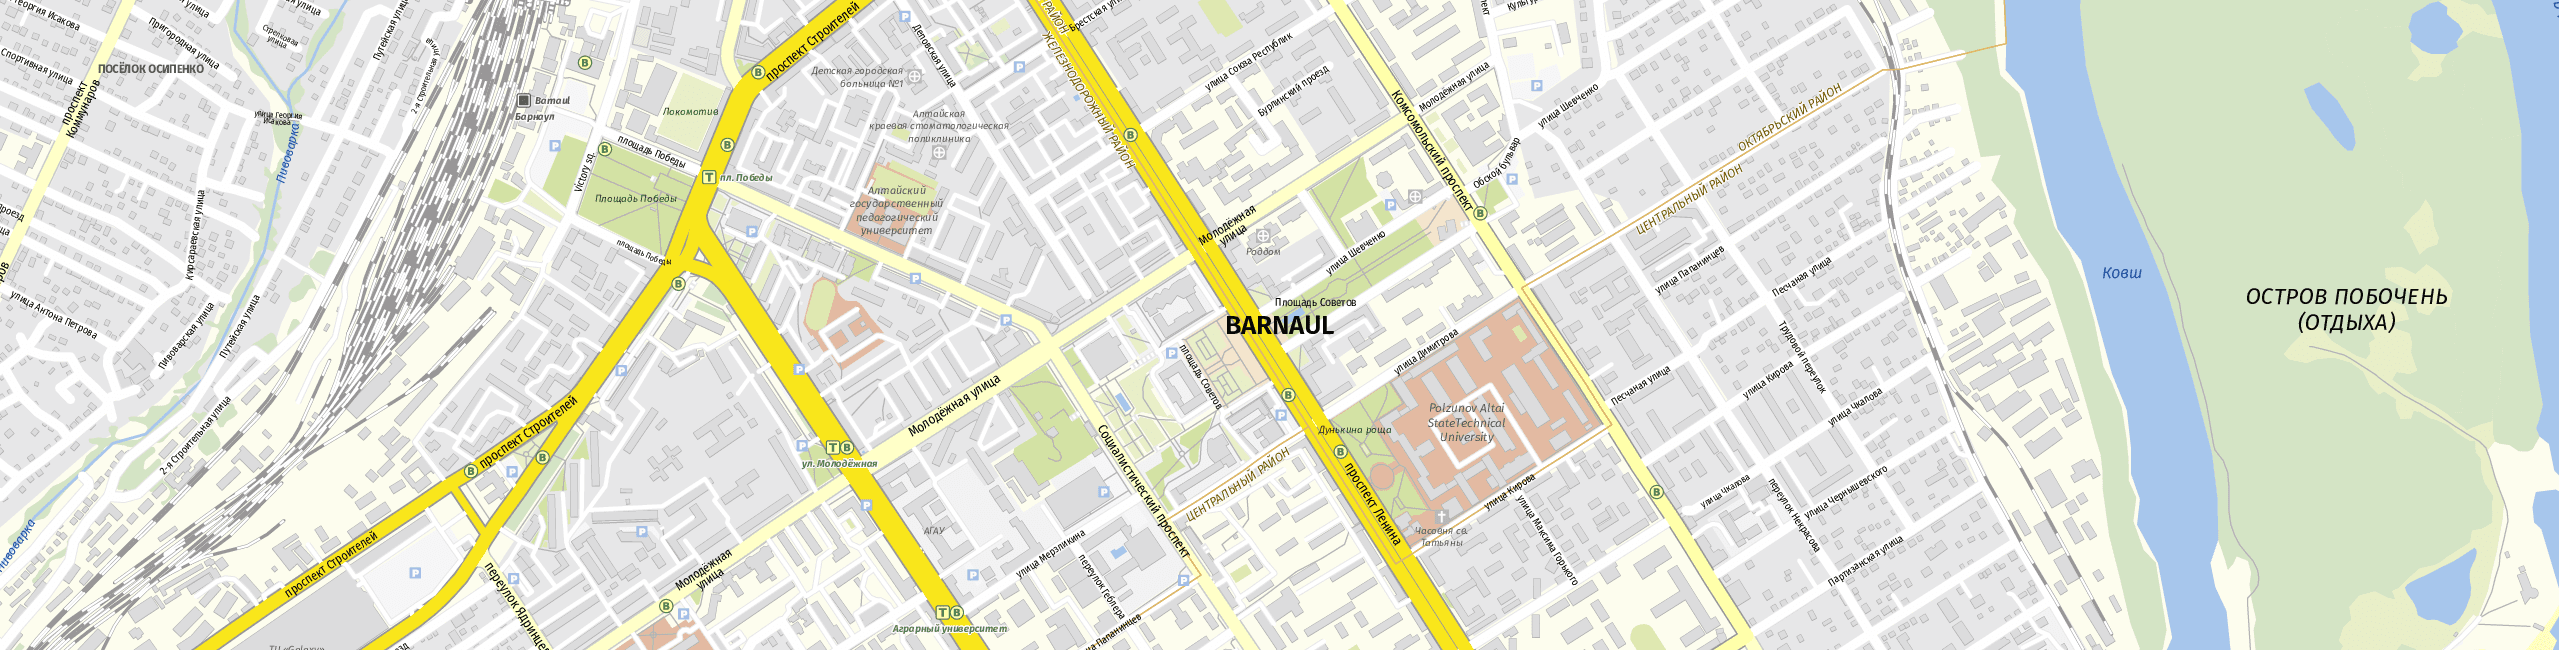 Stadtplan Barnaul zum Downloaden.